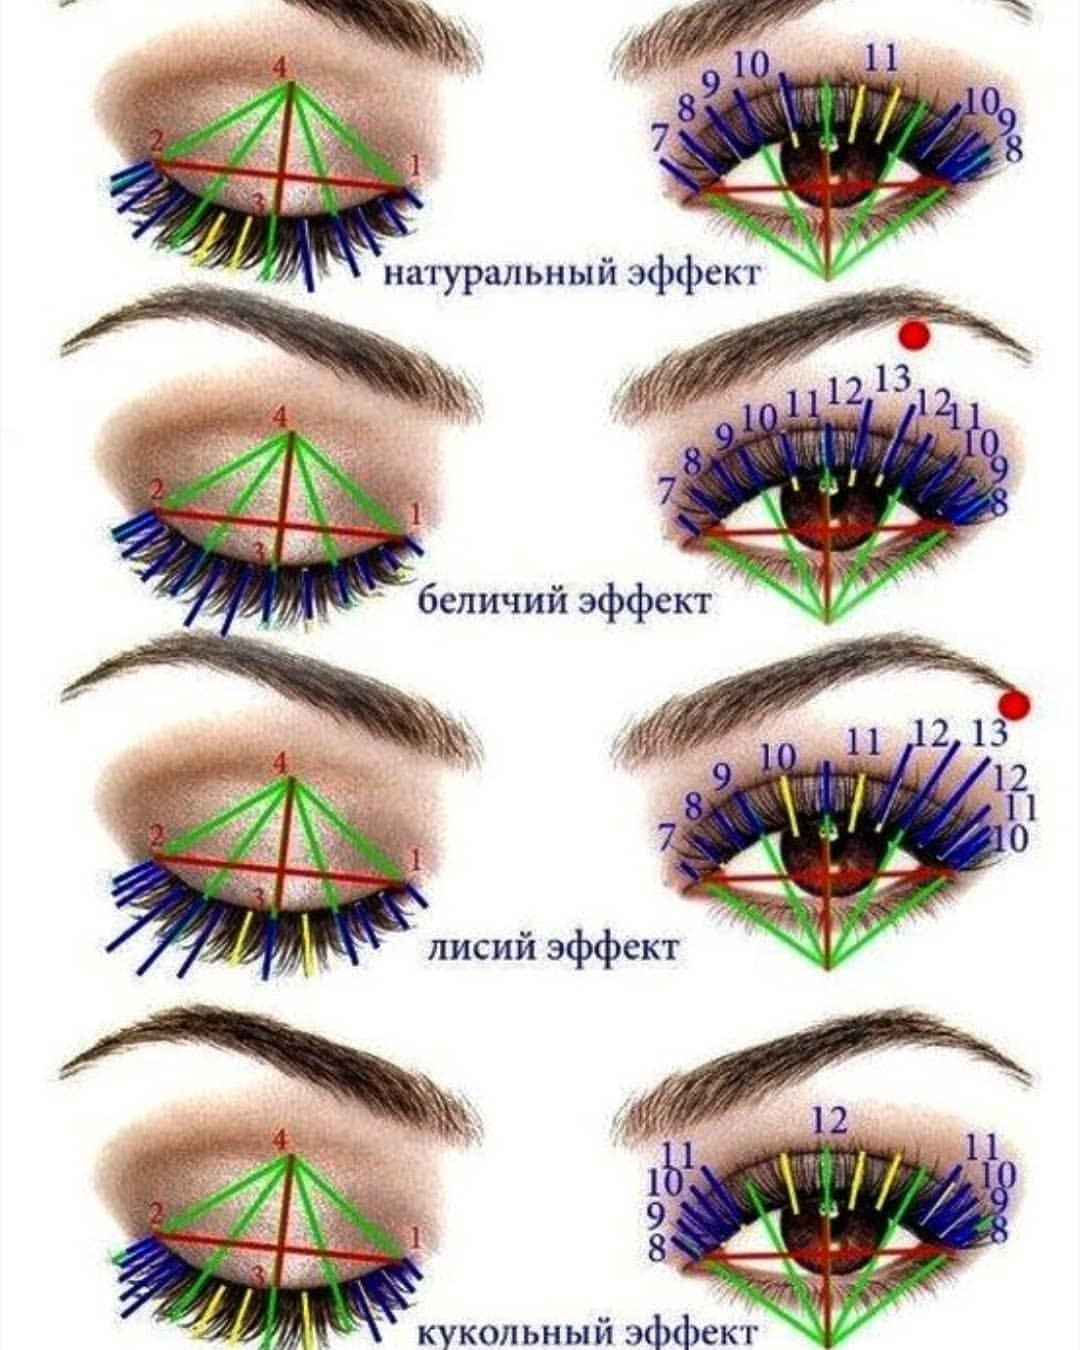 Эффекты ресниц на глазах